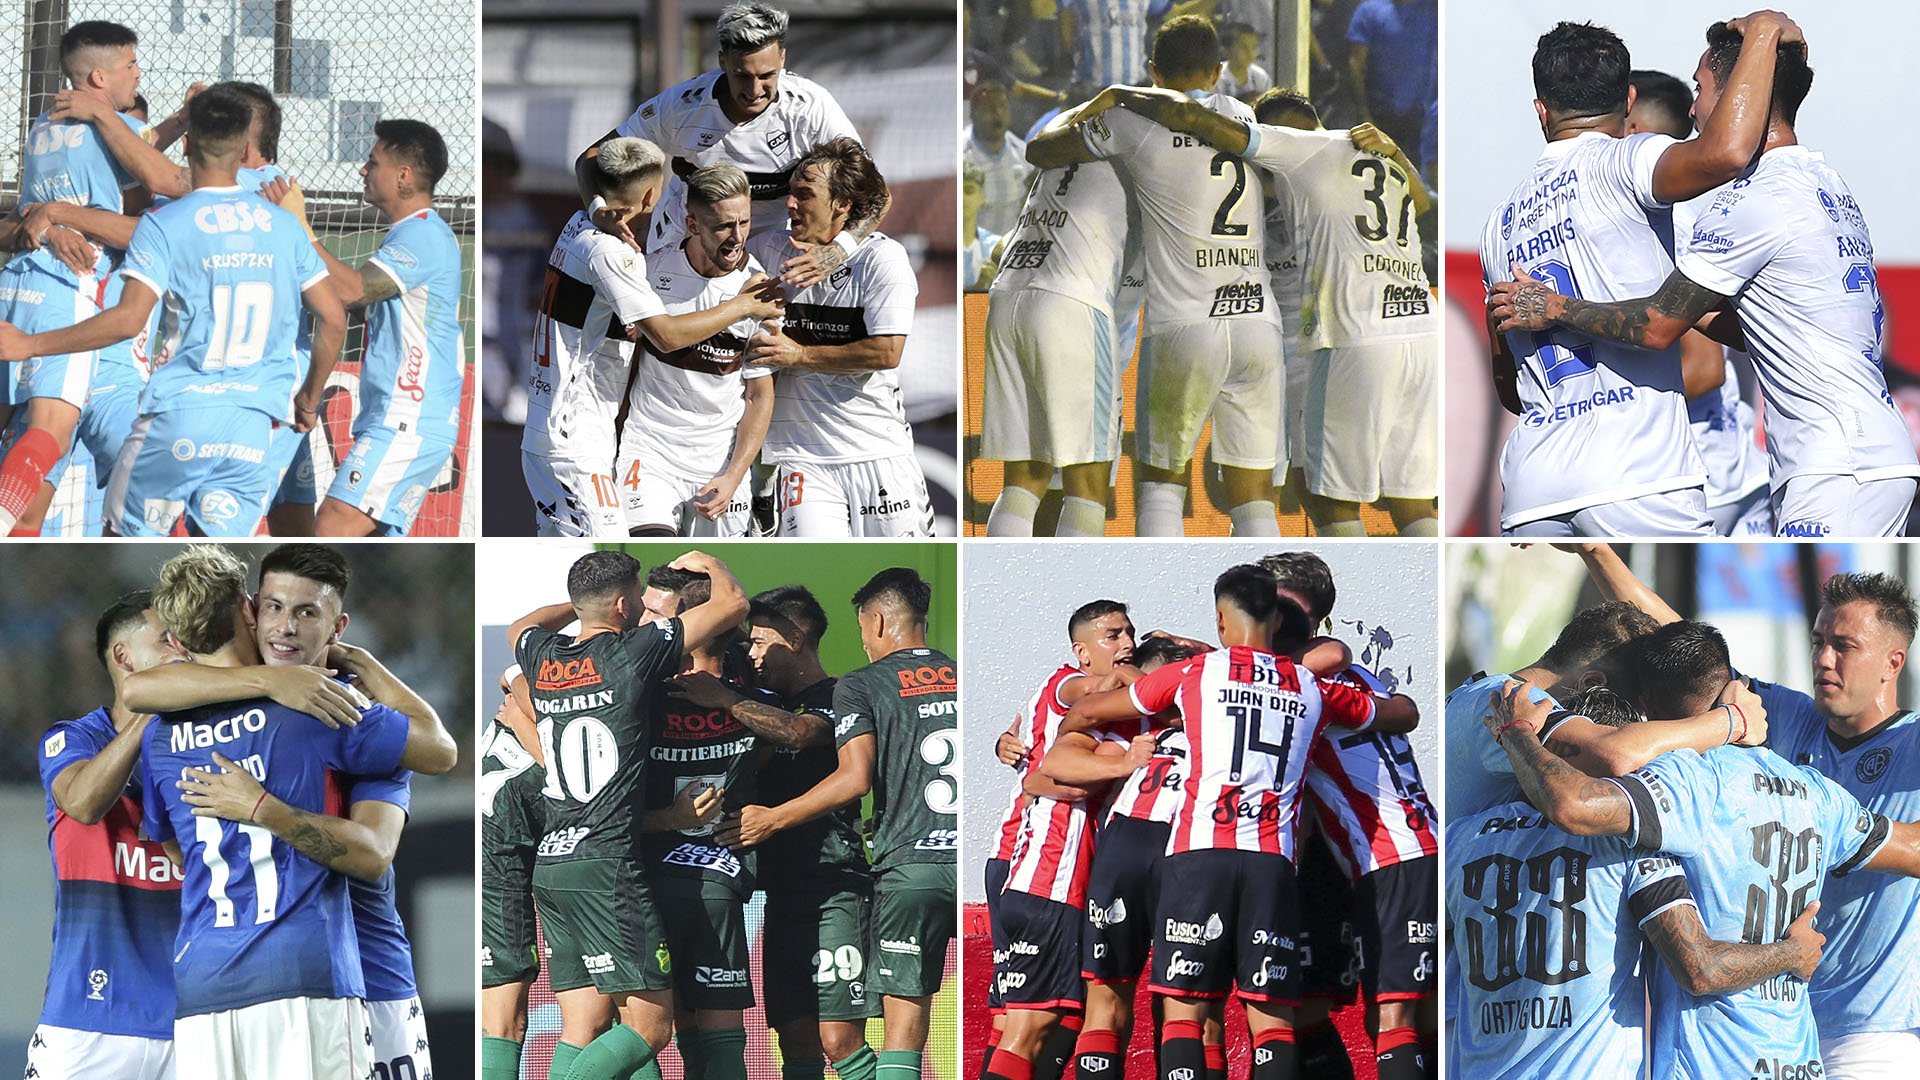 Arsenal-Tigre, Platense-Defensa, Atlético Tucumán-Barracas Central y Godoy Cruz-Belgrano, los otros partidos del día